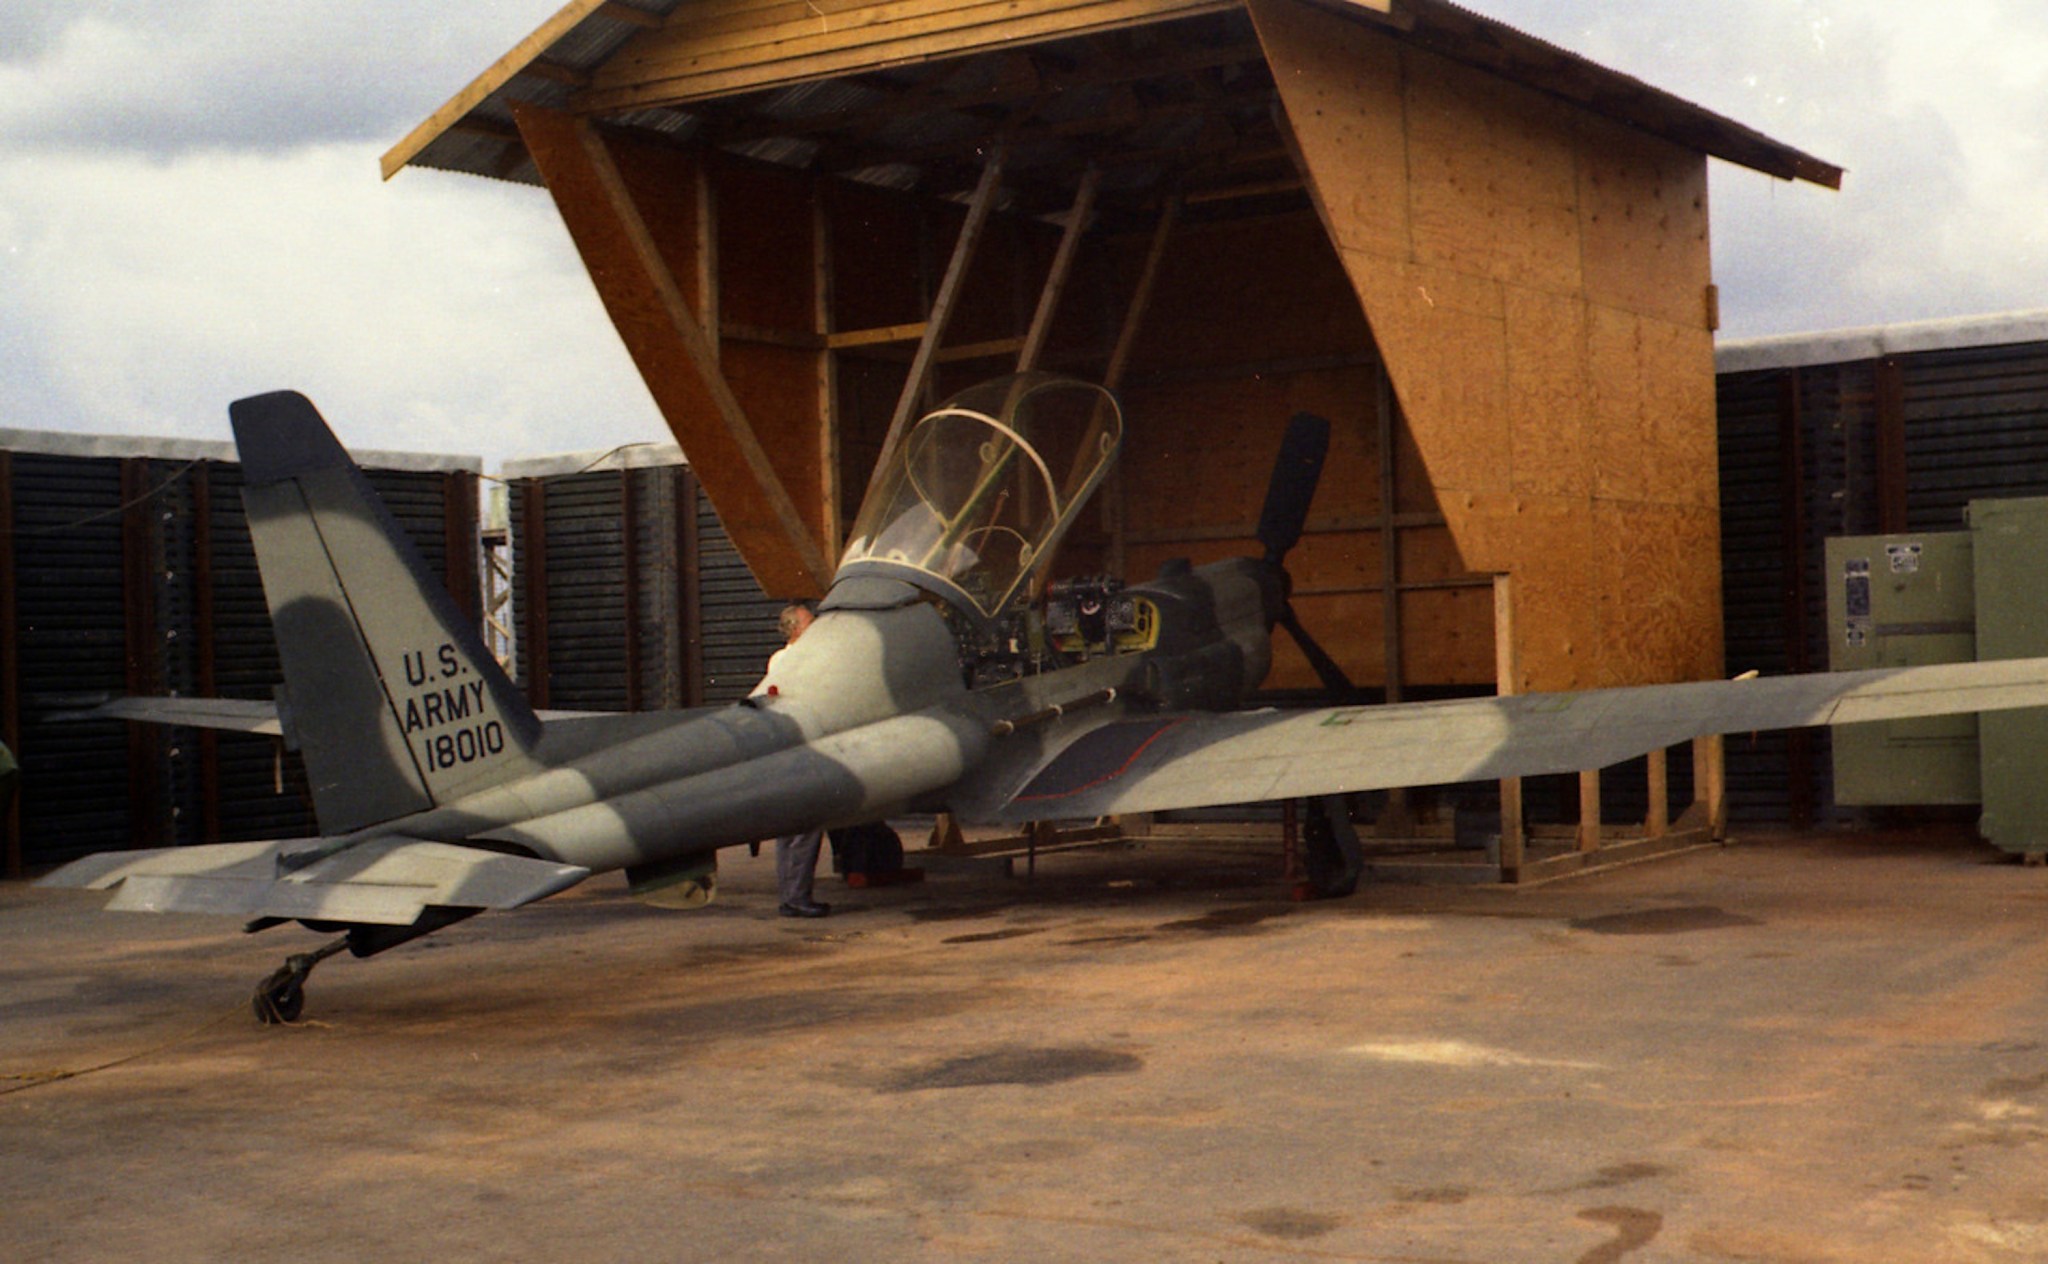 YO-3A  in its original livery covert serving as a nighttime battlefield surveillance aircraft.